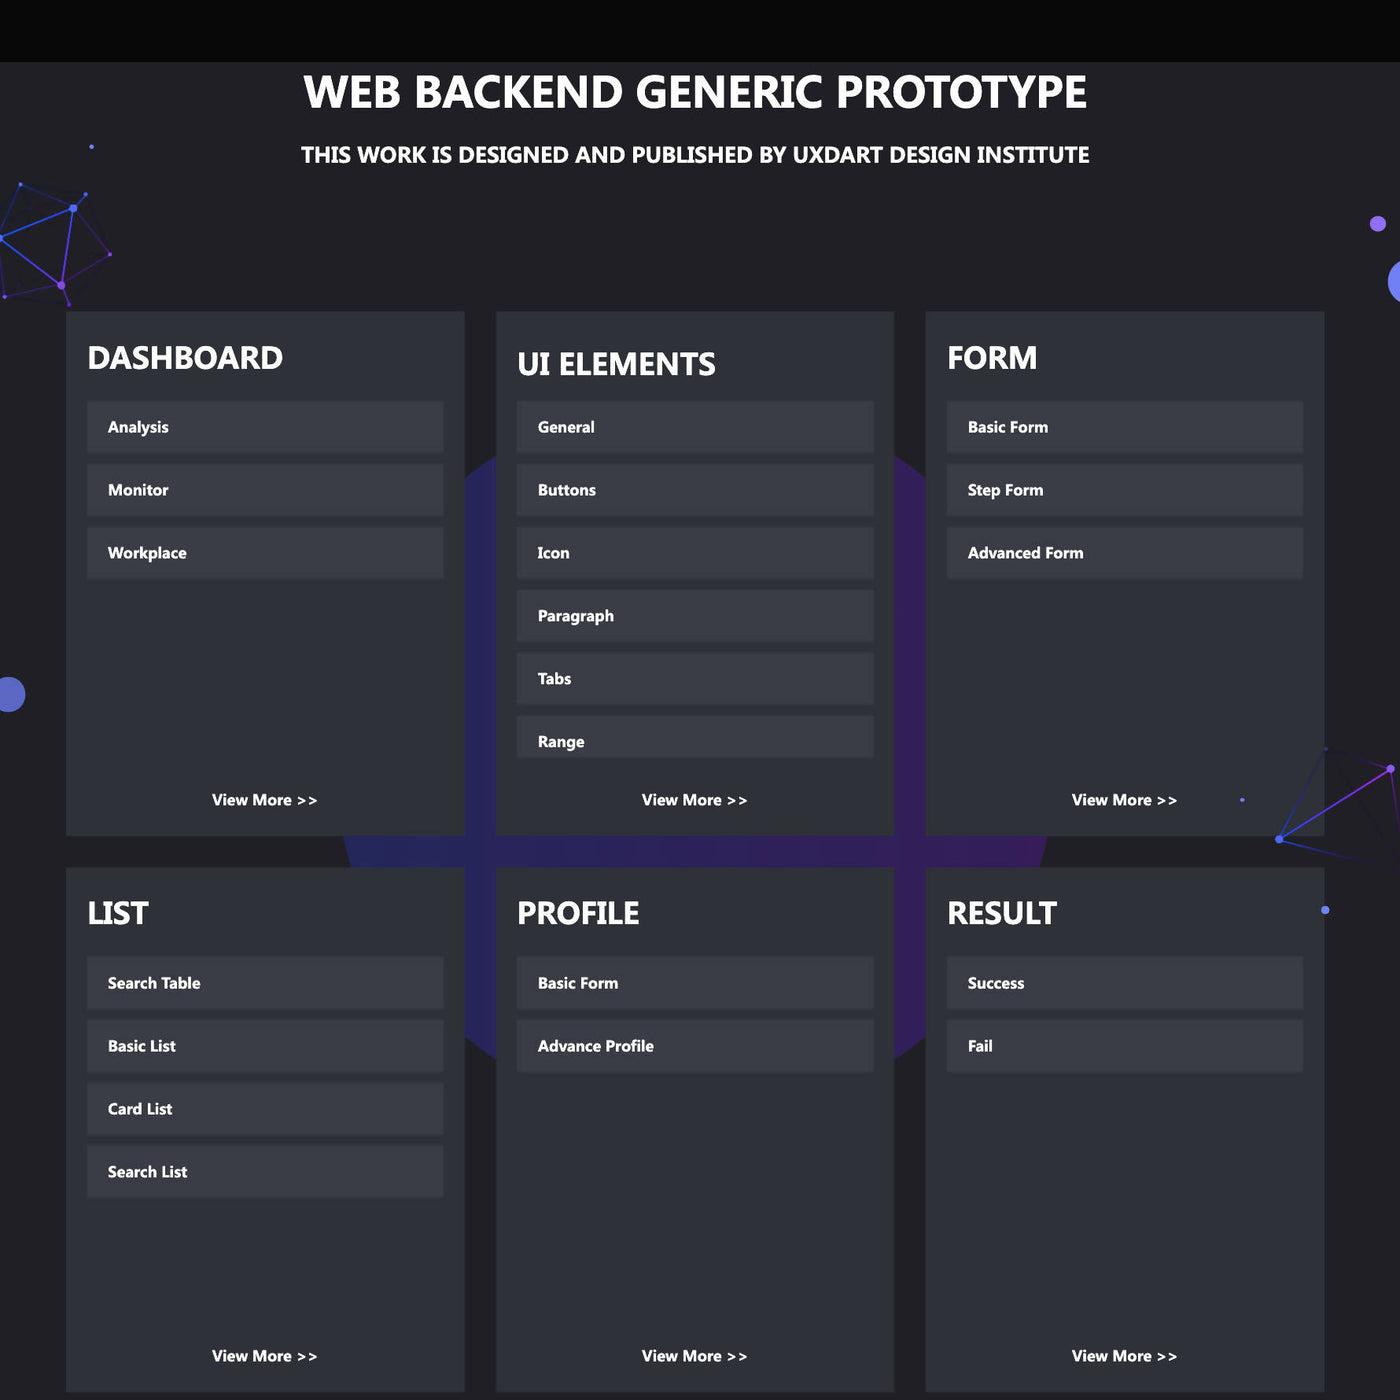 UXDART Web Backend Generic Prototype